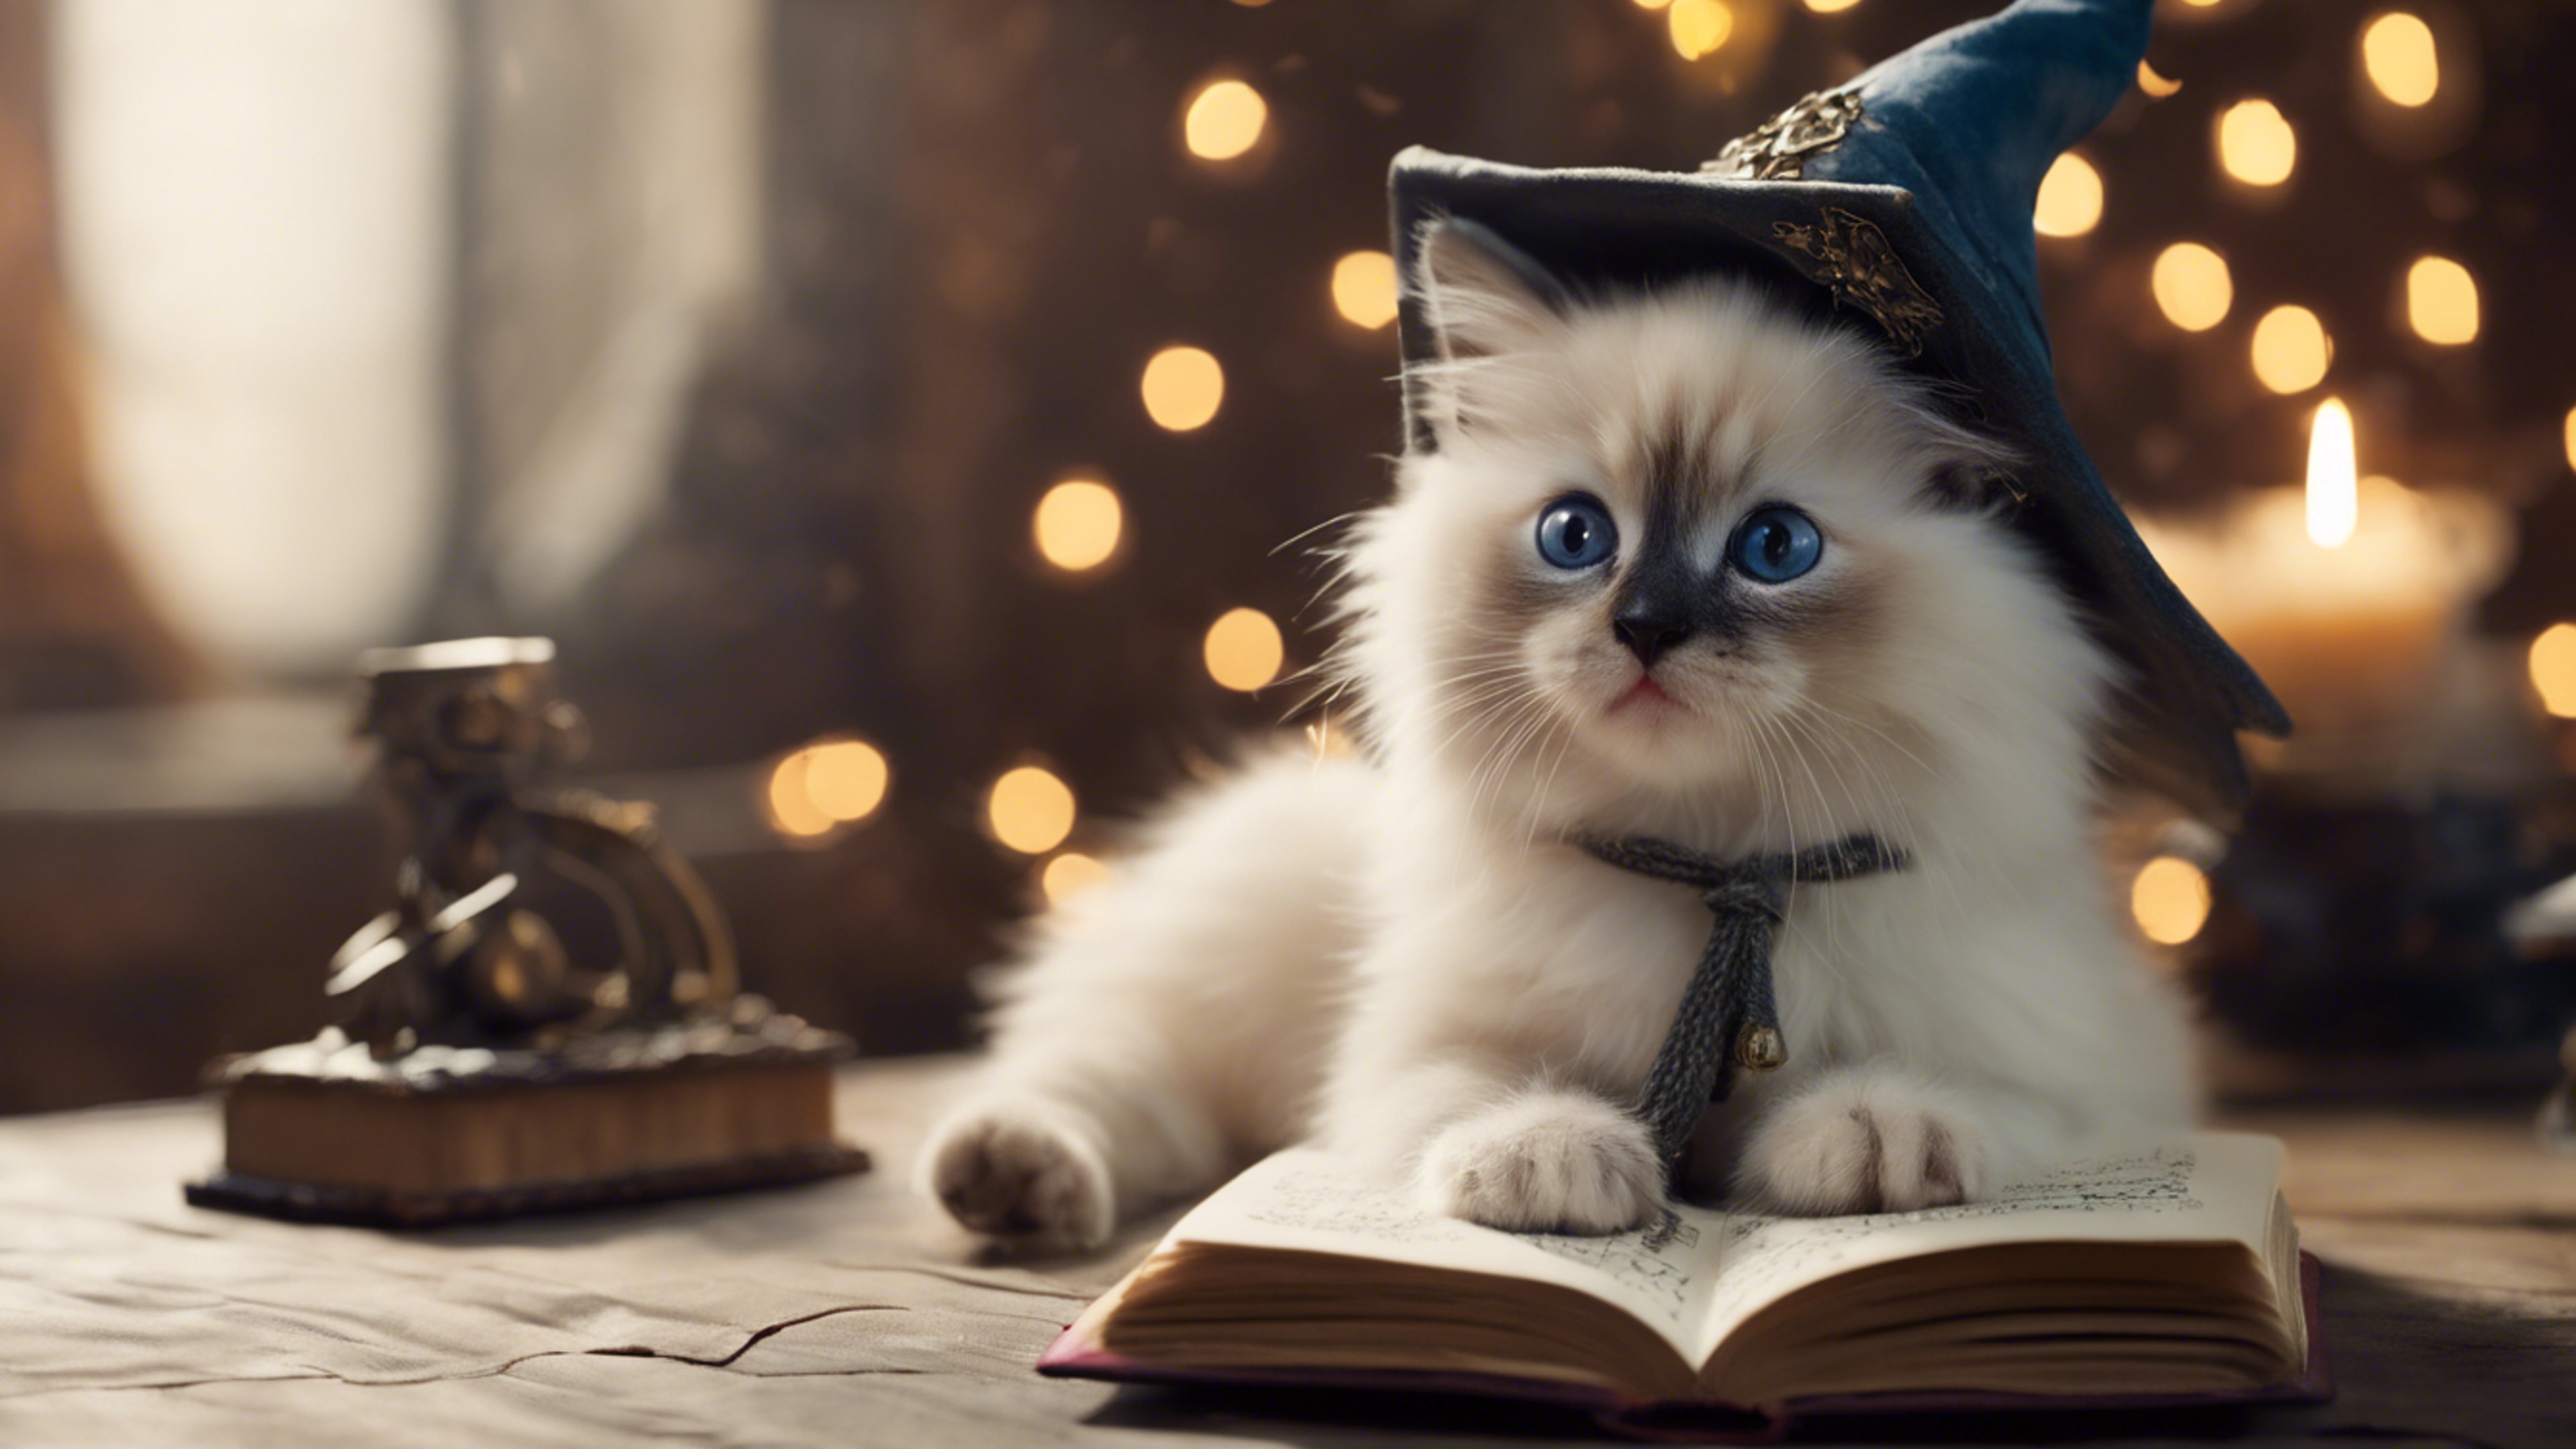 A Ragdoll kitten wearing a wizard hat, a spellbook open in front of it.壁紙[bd84ae8594bf4806934f]